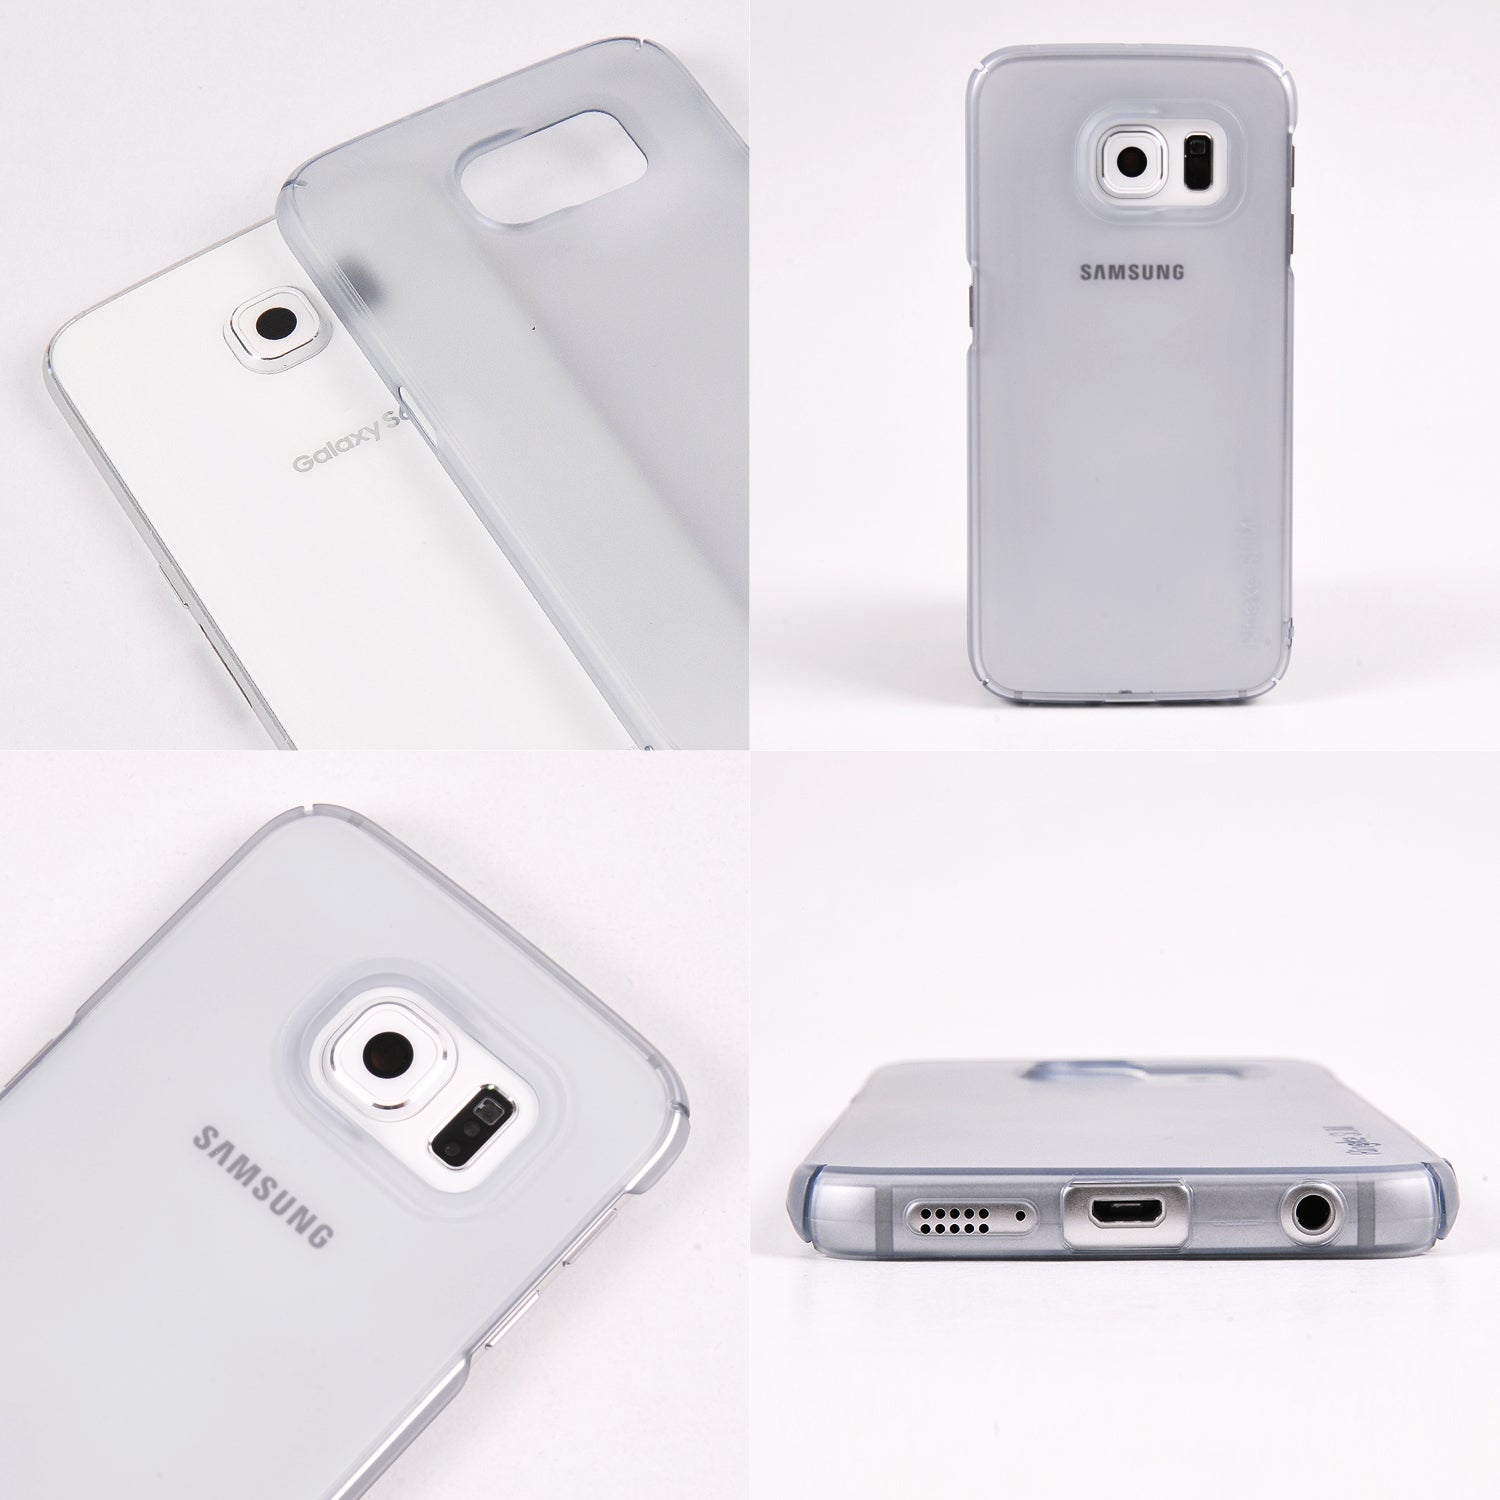 Galaxy S6 Edge [Slim]